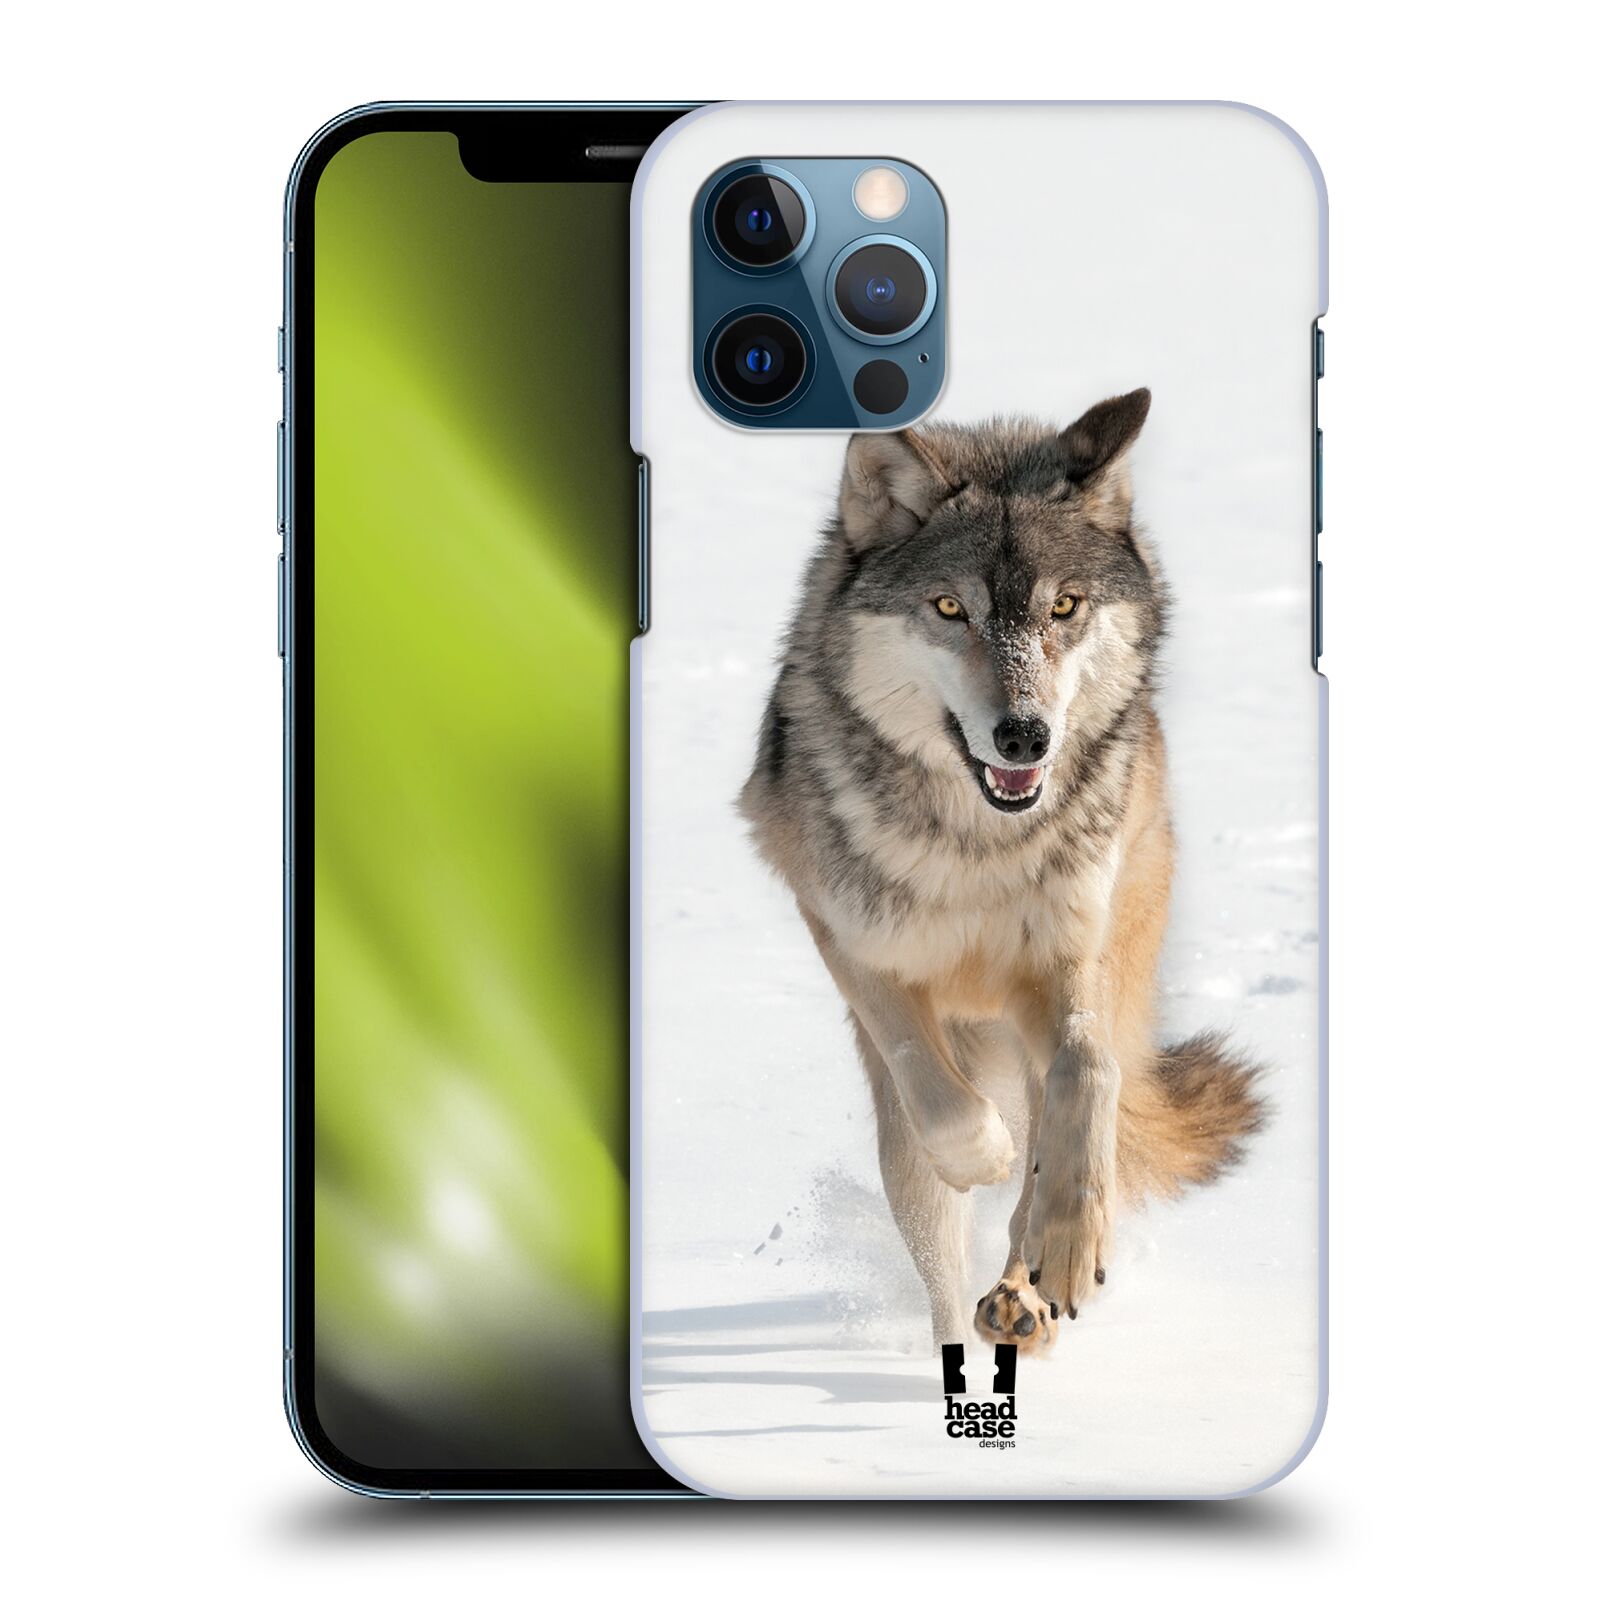 HEAD CASE plastový obal na mobil Apple Iphone 12 / Iphone 12 PRO vzor Divočina, Divoký život a zvířata foto BĚŽÍCÍ VLK